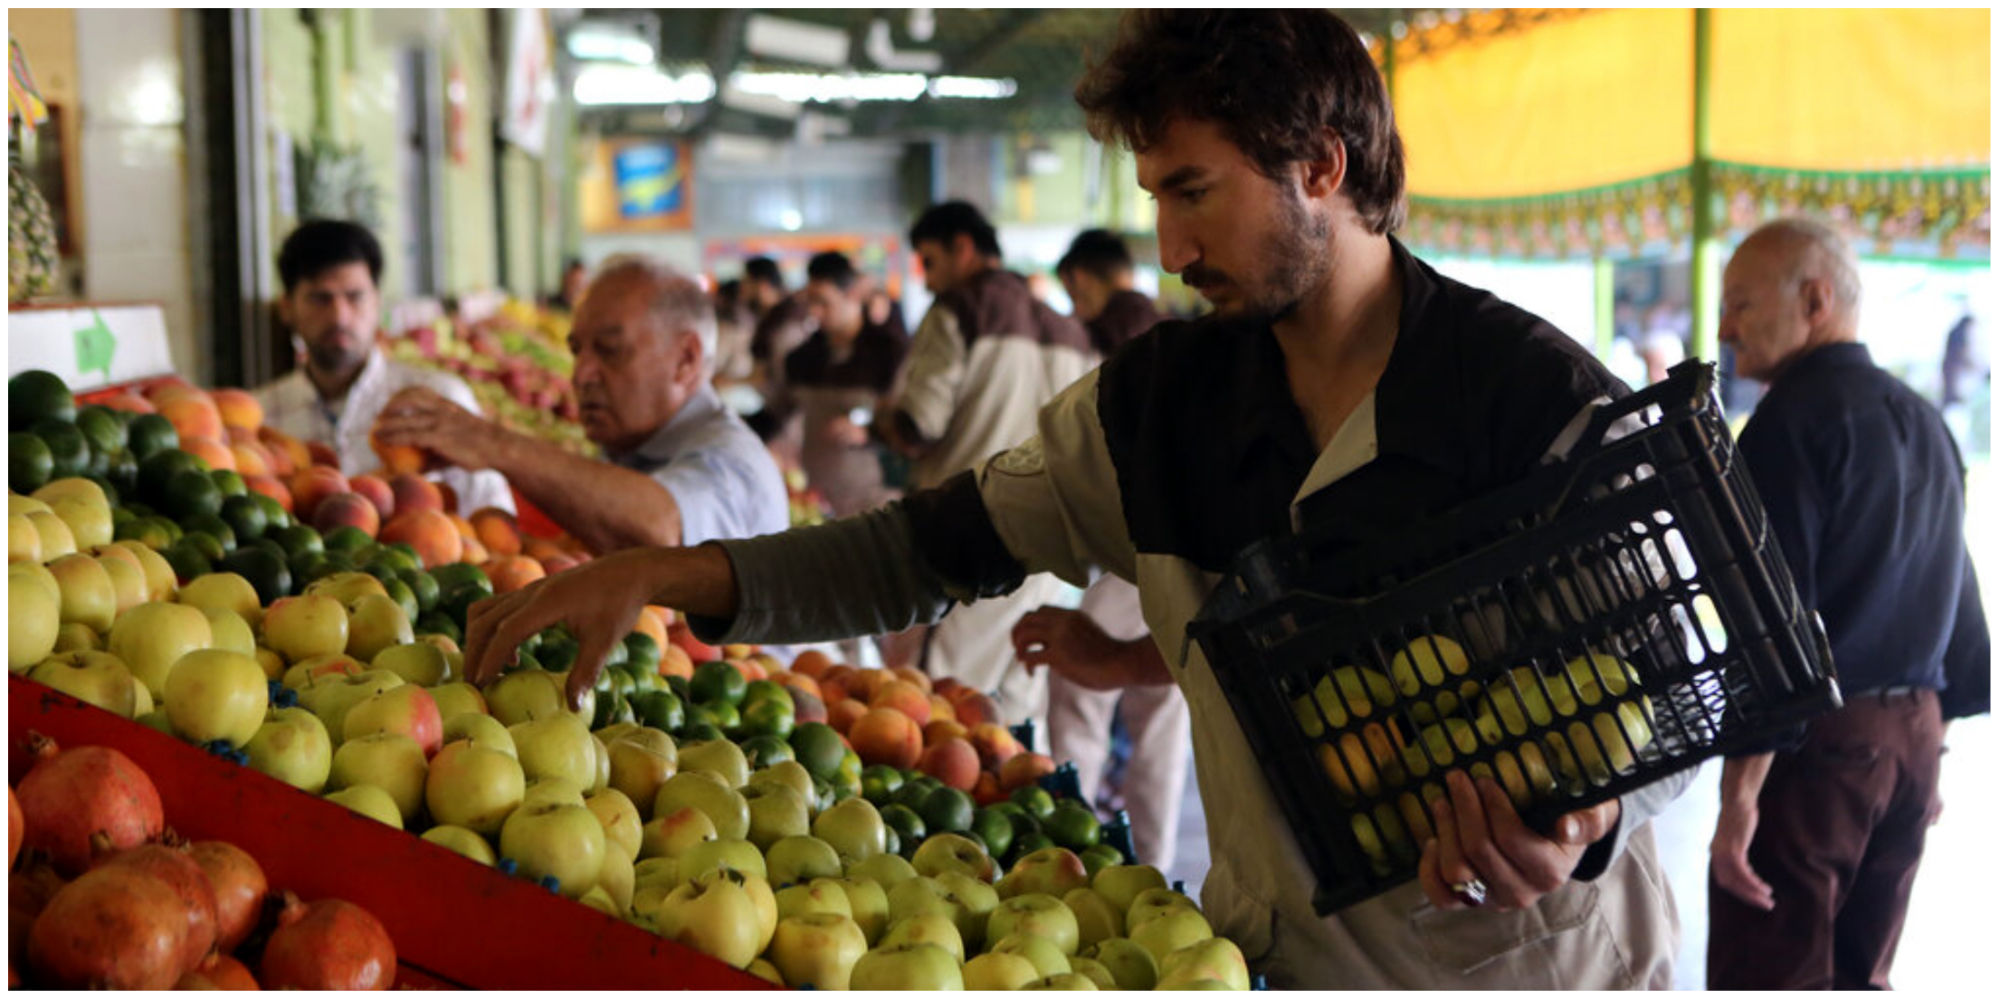 کاهش قیمت میوه در میادین میوه و تره بار تهران